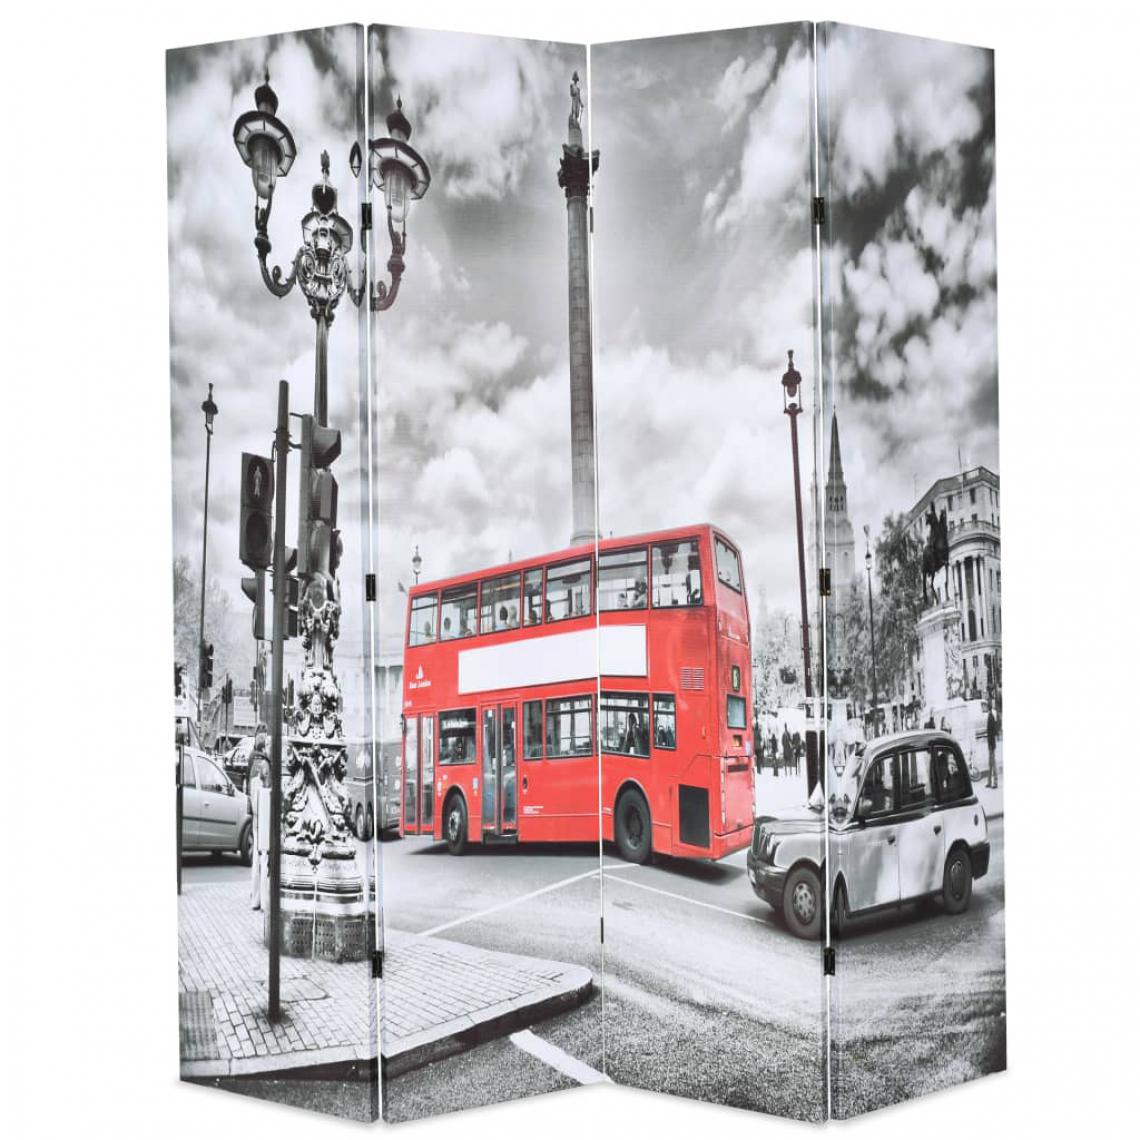 Chunhelife - Cloison de séparation 160 x 170 cm Bus londonien Noir et blanc - Paravents